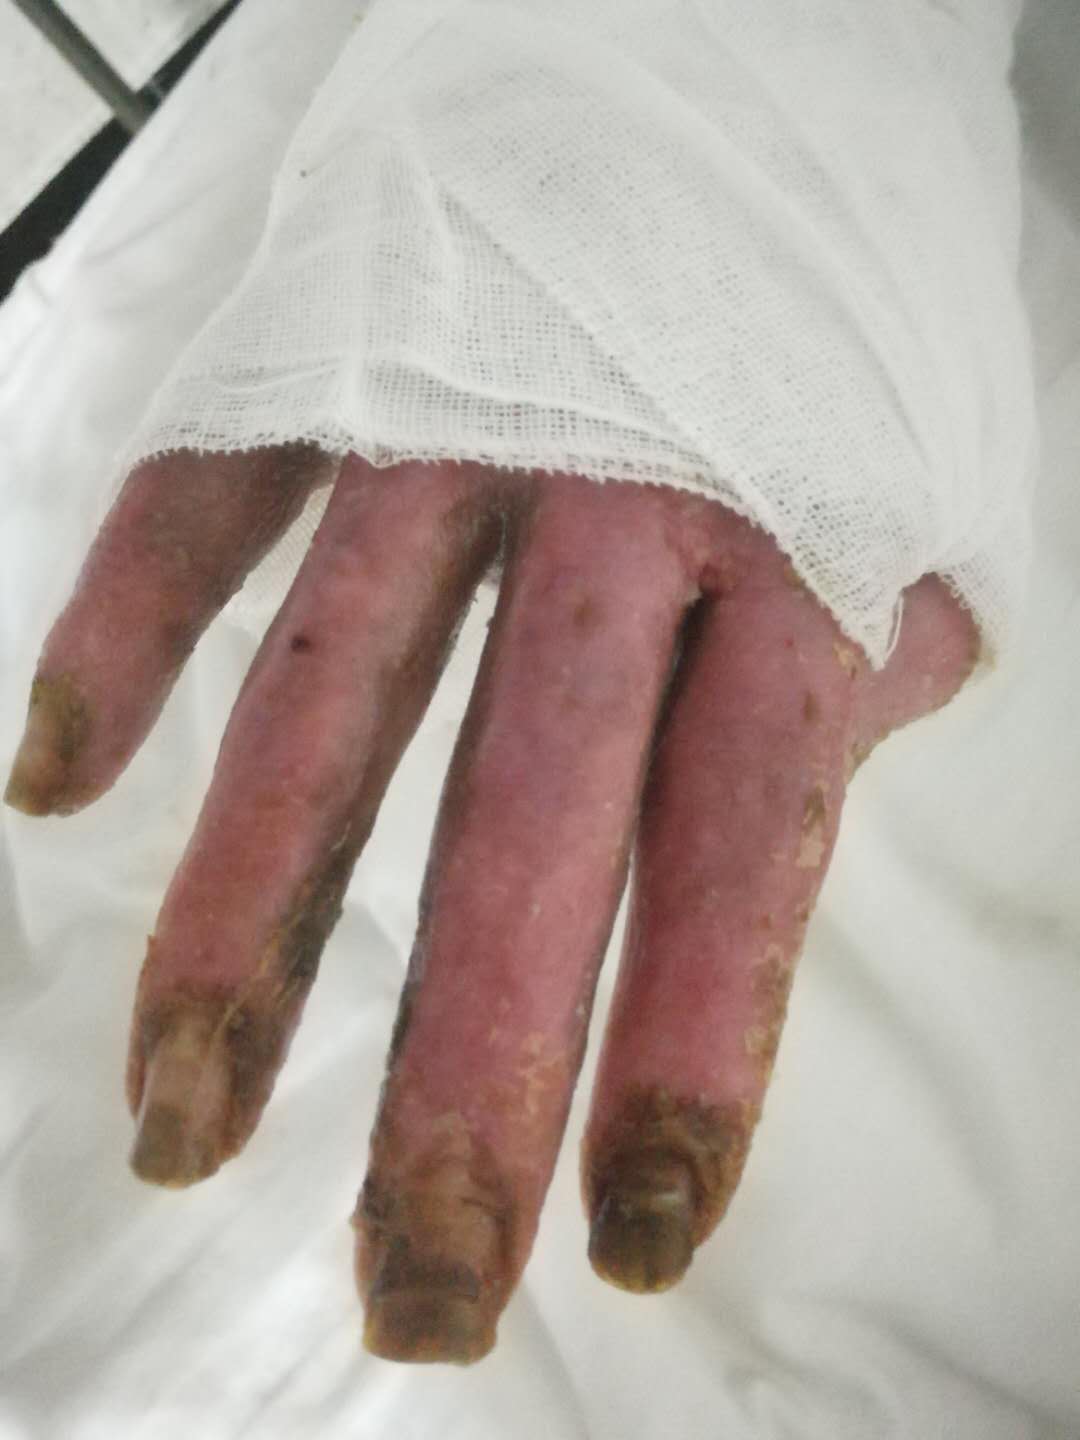 男,47岁,3月前汽油烧伤十根手指无法弯曲,末梢处疼痛难忍